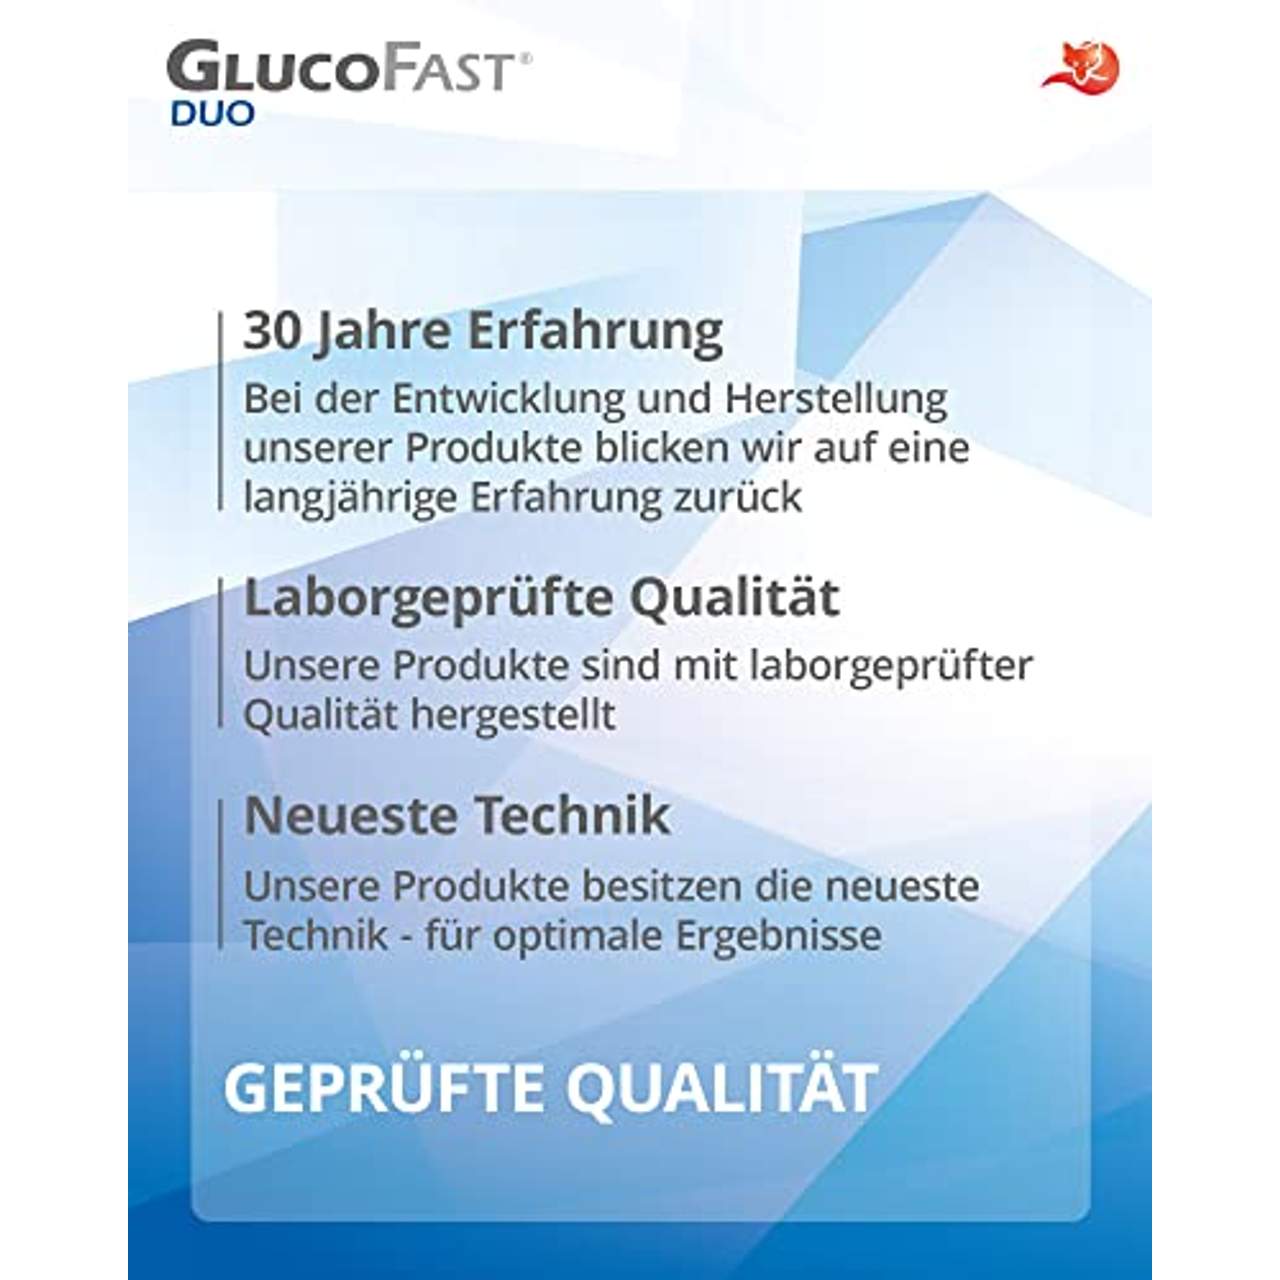 GLUCOFAST Duo Blutzucker-Teststreifen 50 Stk